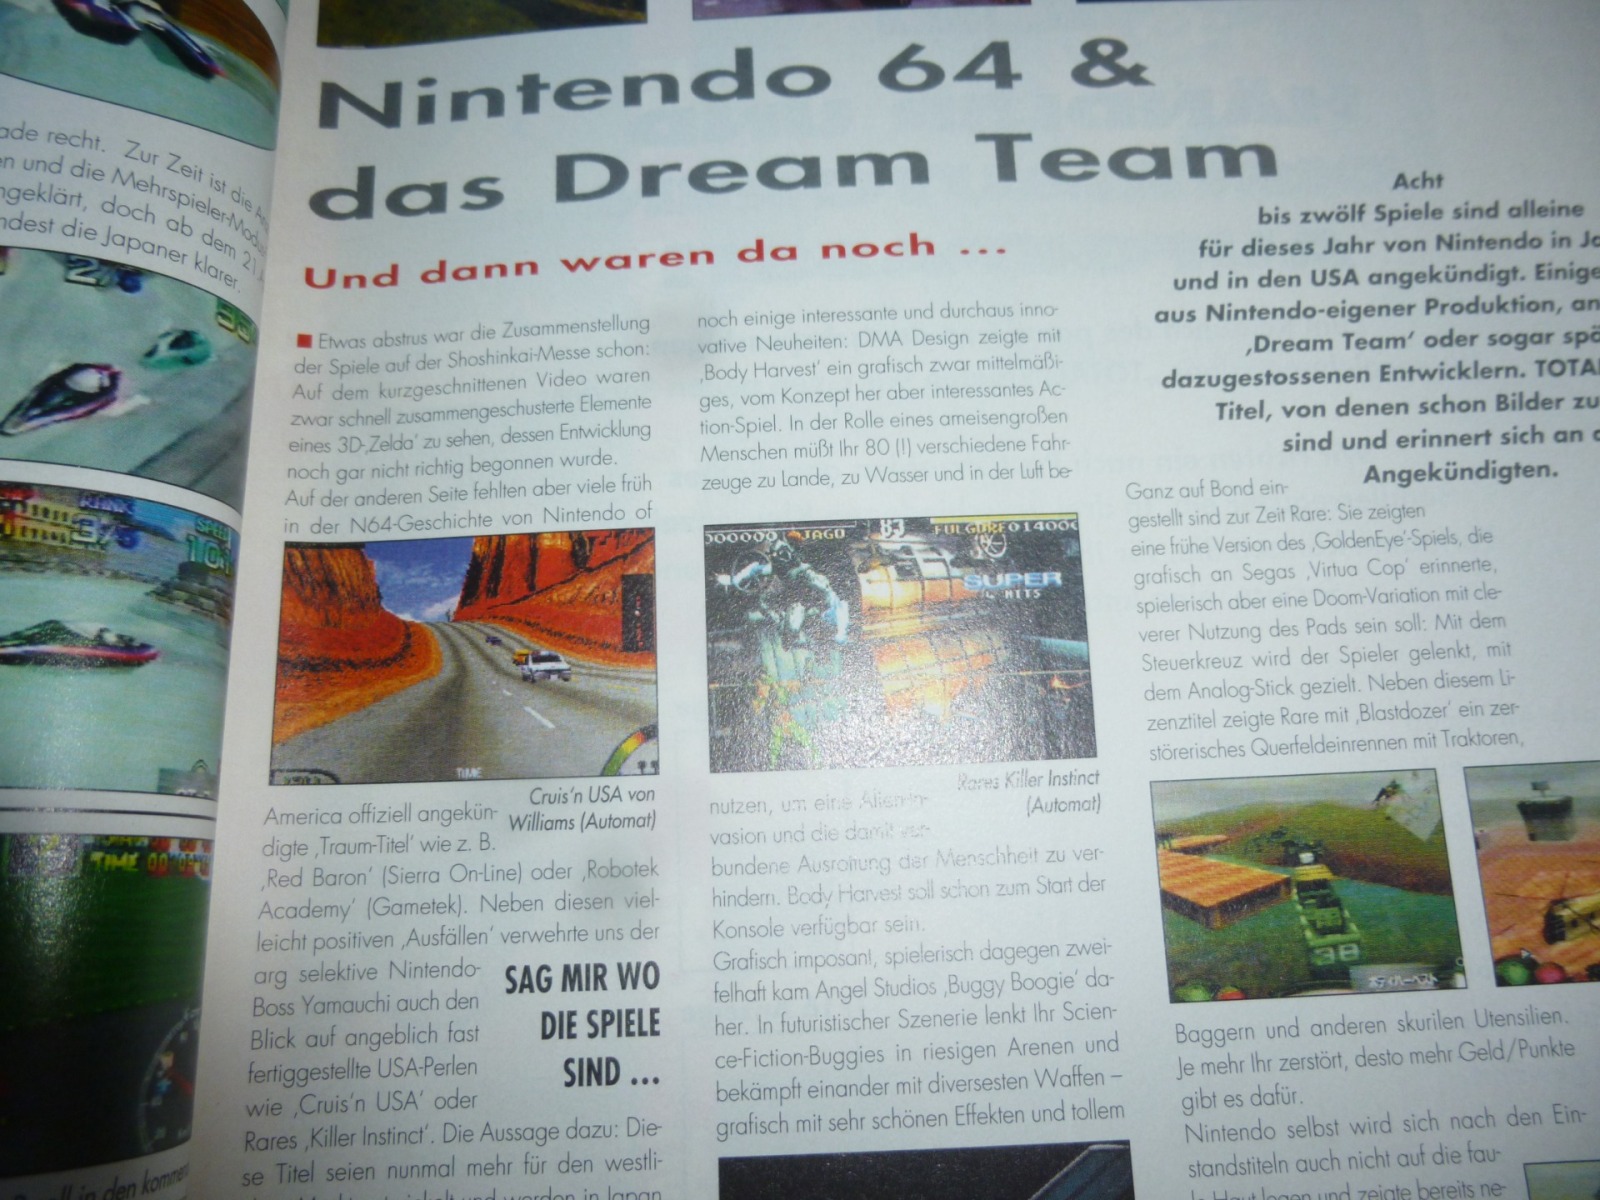 TOTAL Das unabhängige Magazin - 100 Nintendo - Ausgabe 3/96 1996 7